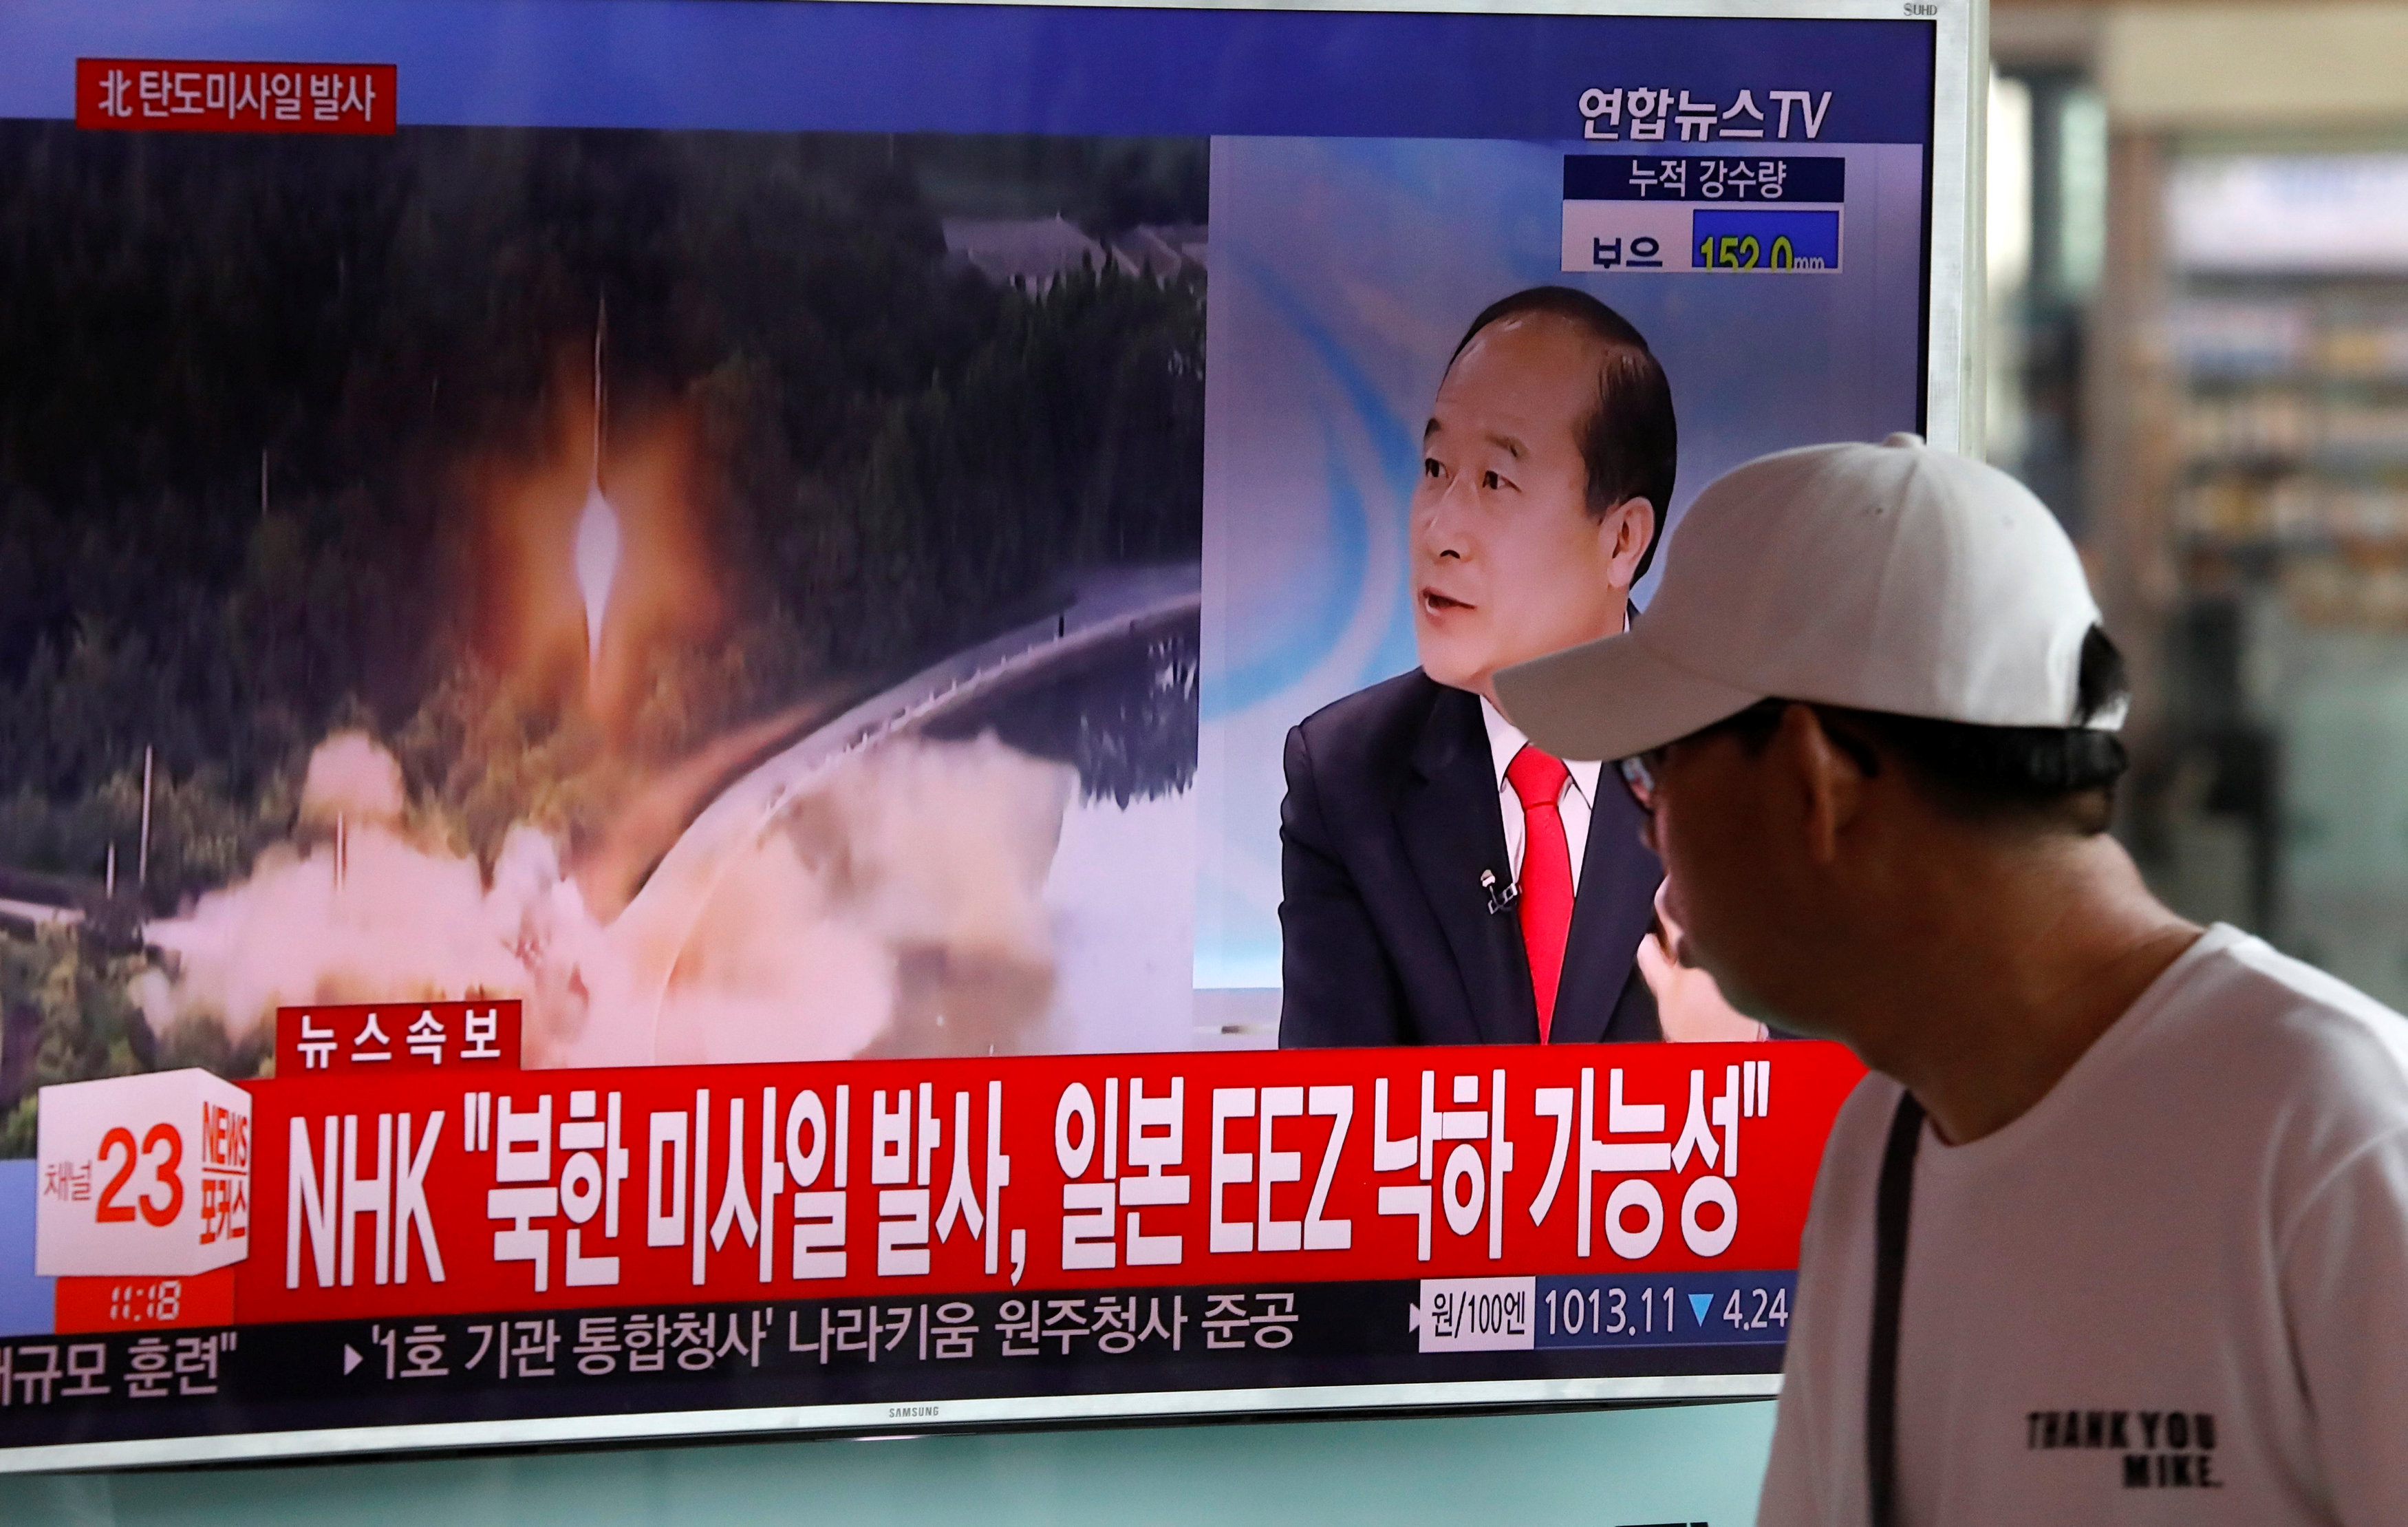 النشرات الإخبارية بكوريا الشمالية تعلن التجربة الصاروخية الجديدة